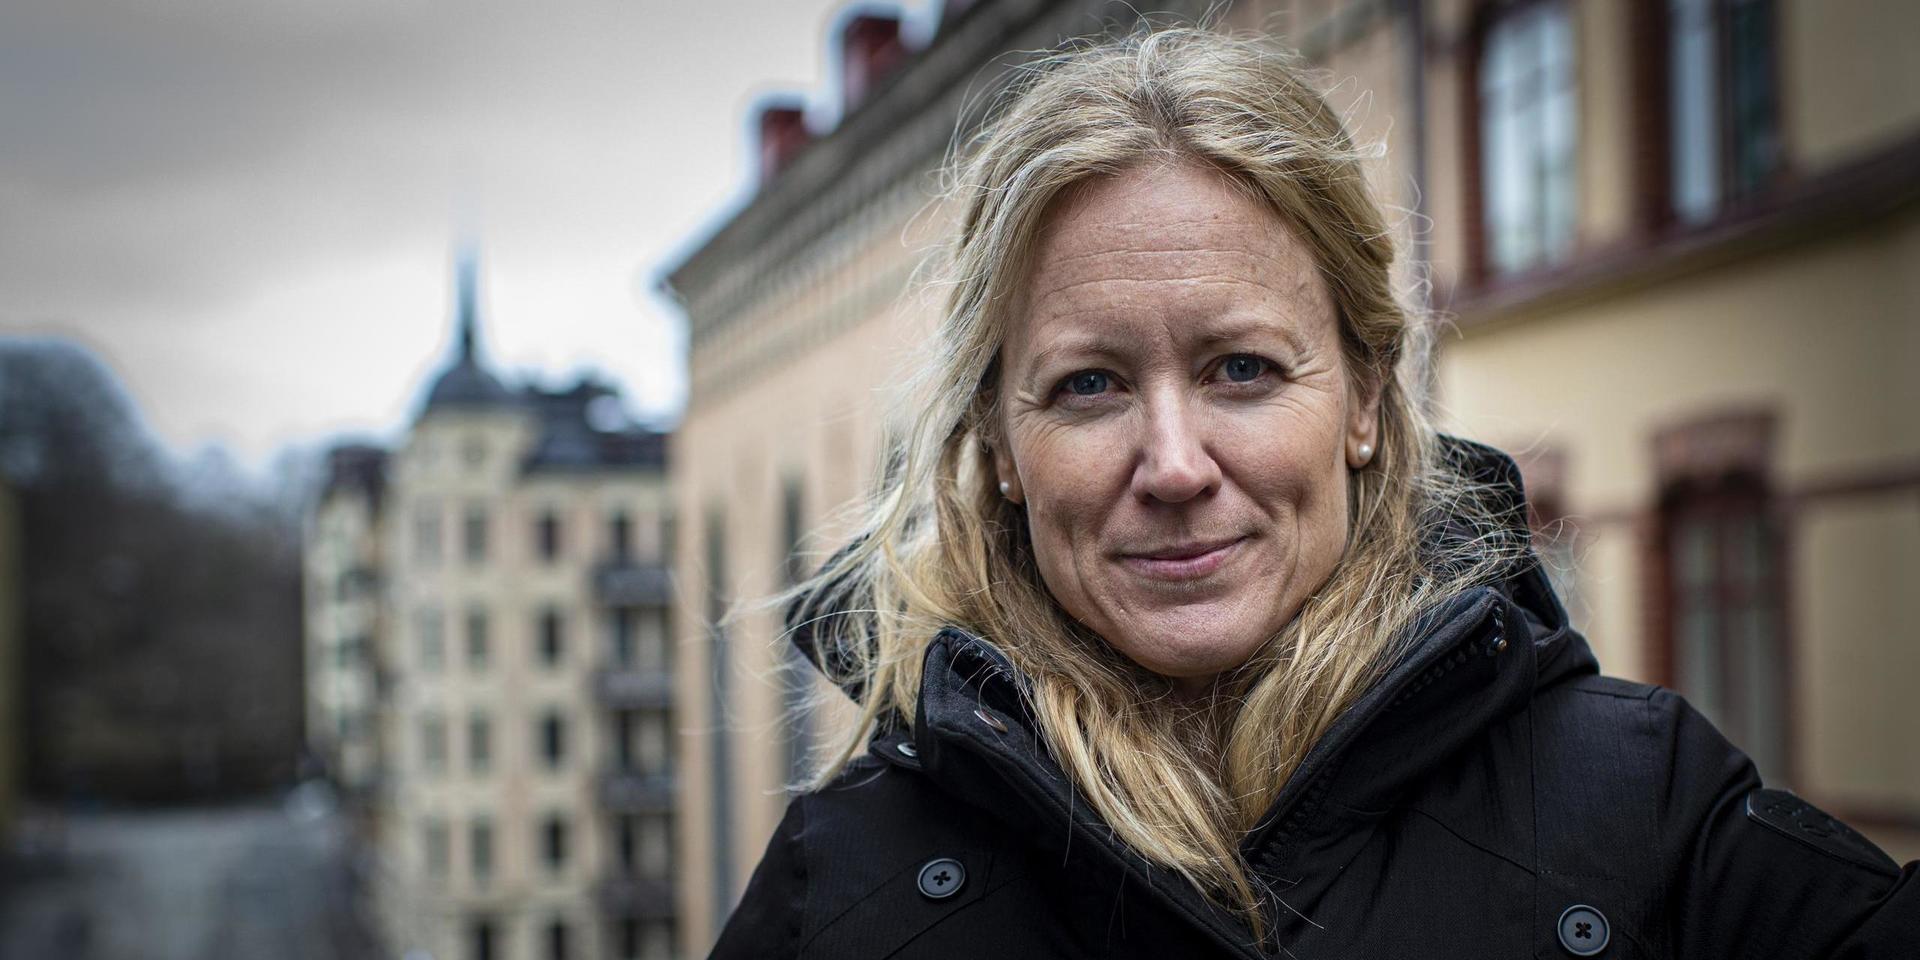  Kristine Rygge är vaccinationssamordnare i Västra Götalandsregionen. 